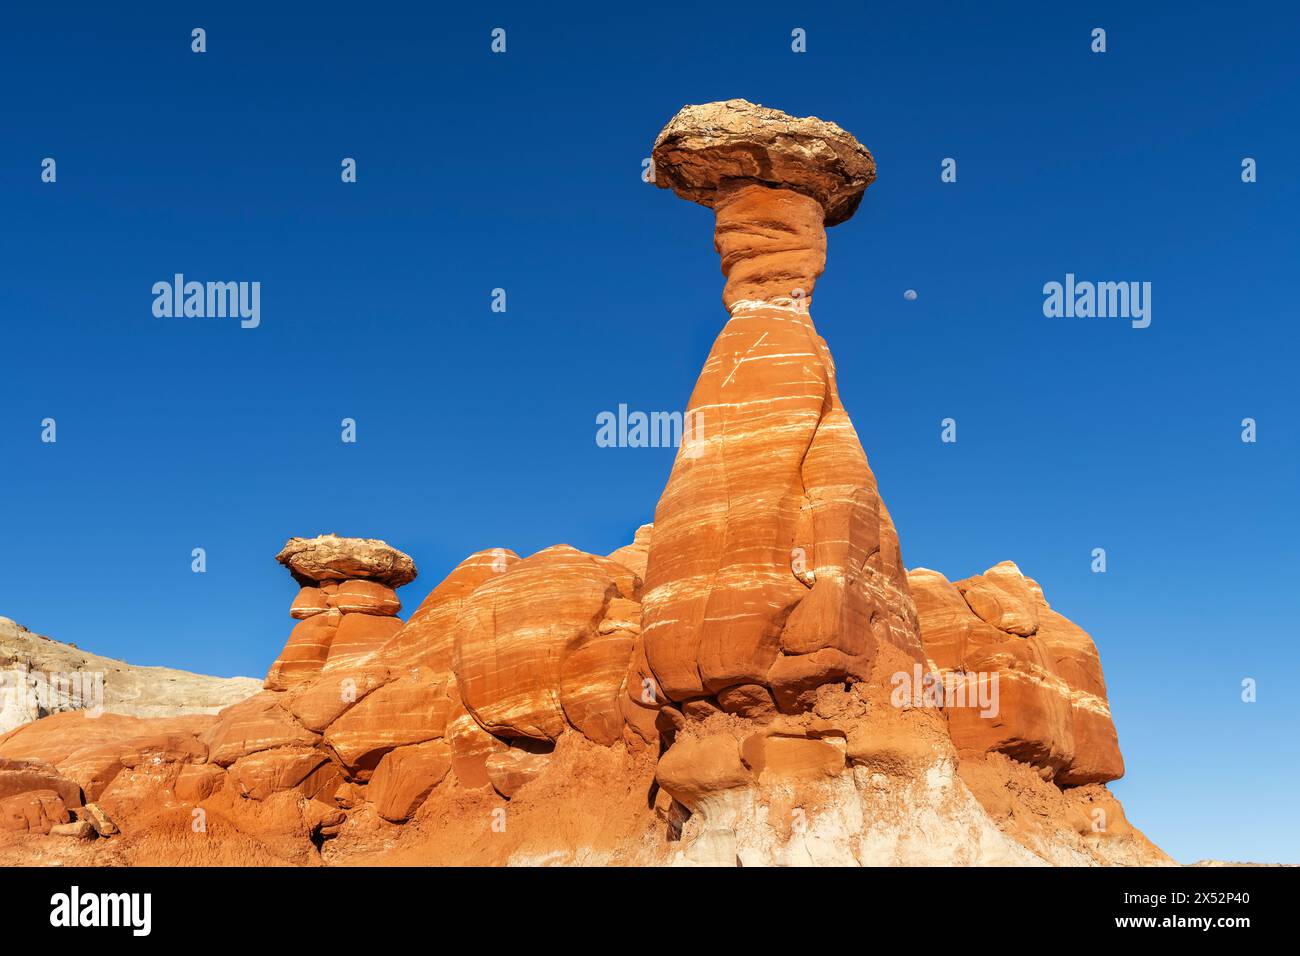 Hoodoo en toadstool en grès blanc et rouge à Kanab Utah montrant des flèches fortement érodées et une roche plus dure équilibrée sur le dessus encadrée par un ciel bleu. Banque D'Images